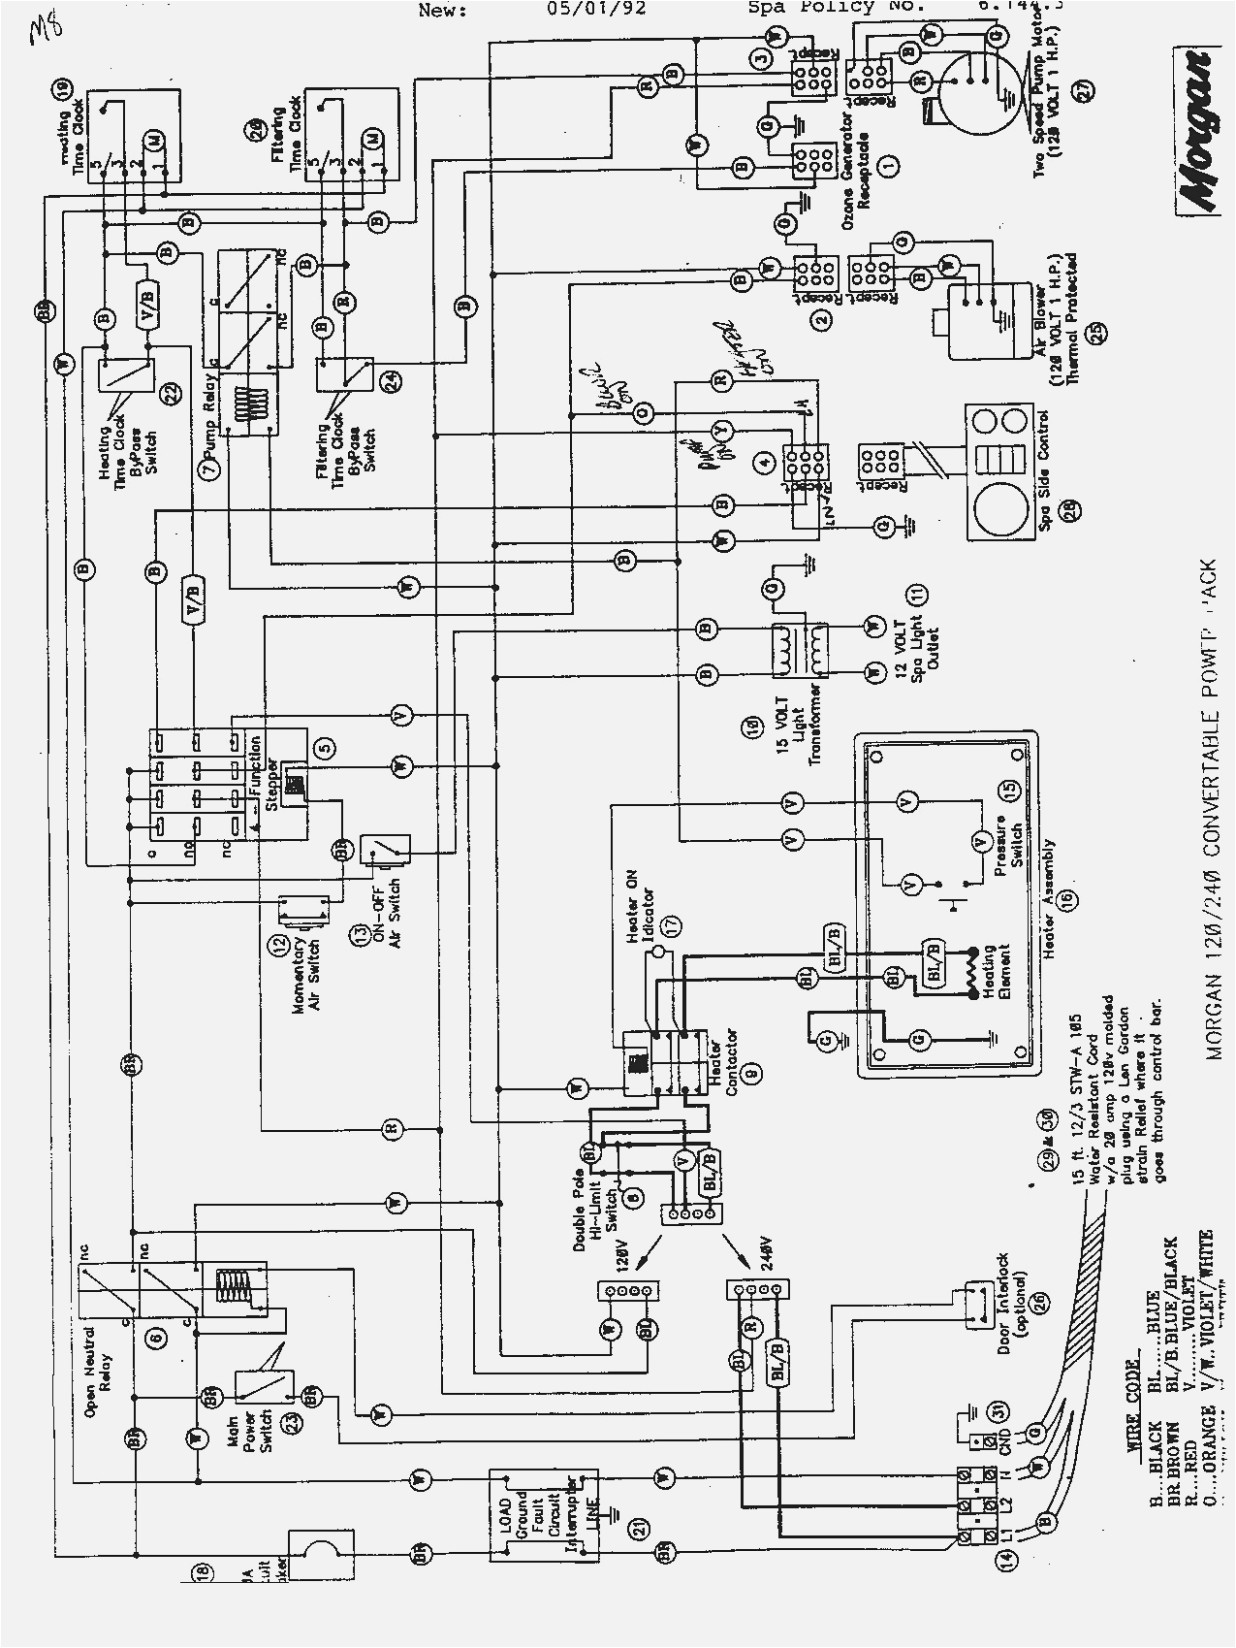 dynasty spa wiring diagram manual e booksdynasty spa wiring diagram wiring diagram librarydynasty spa wiring diagram